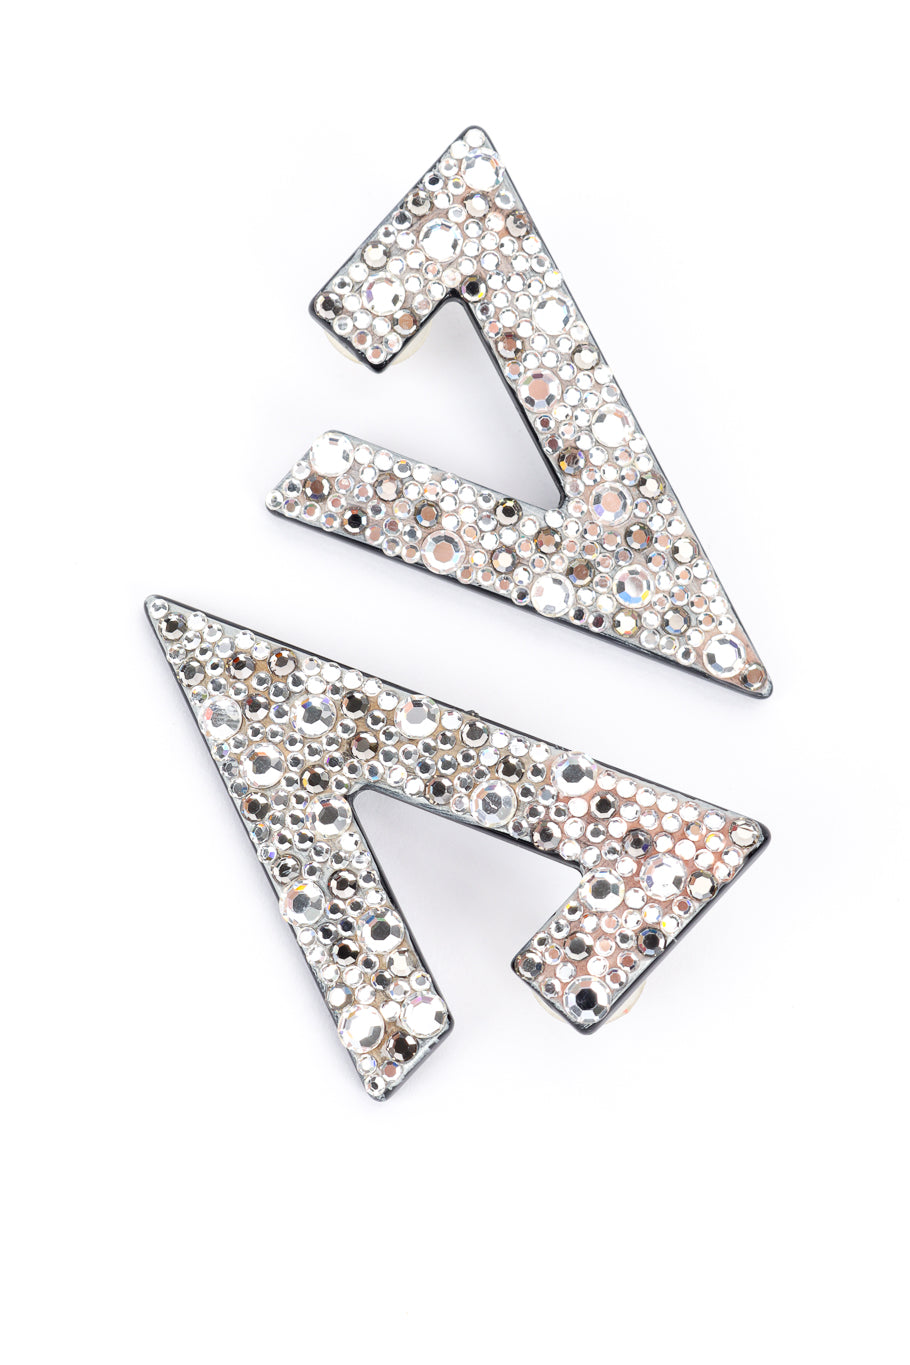 Vintage Crystal Rhinestone Split Triangle Earrings front @recess la